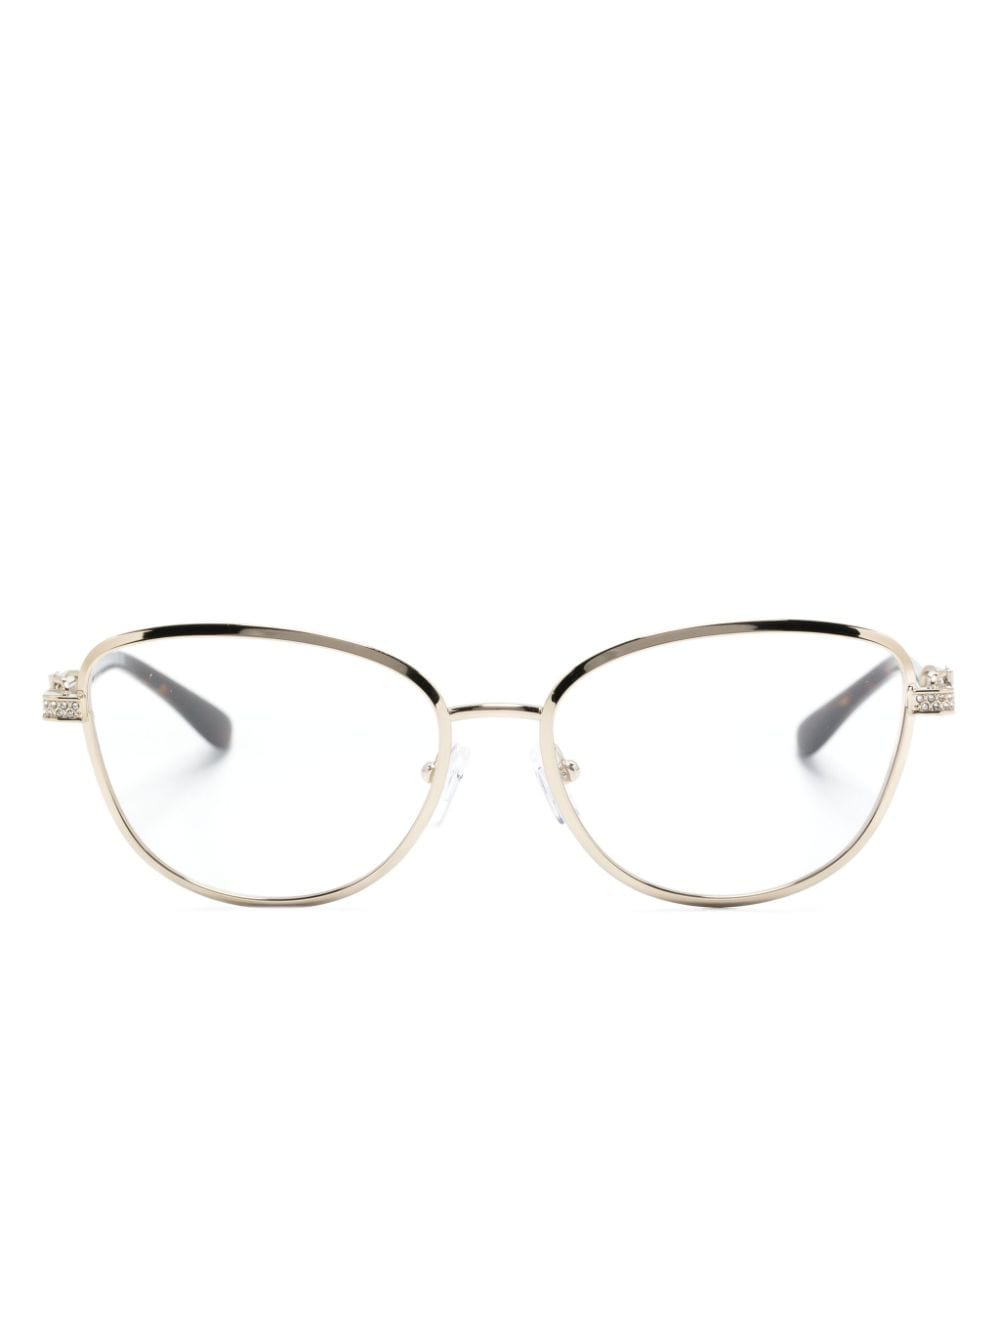 Michael Kors Cordoba Cat-eye Frame Glasses In Gold